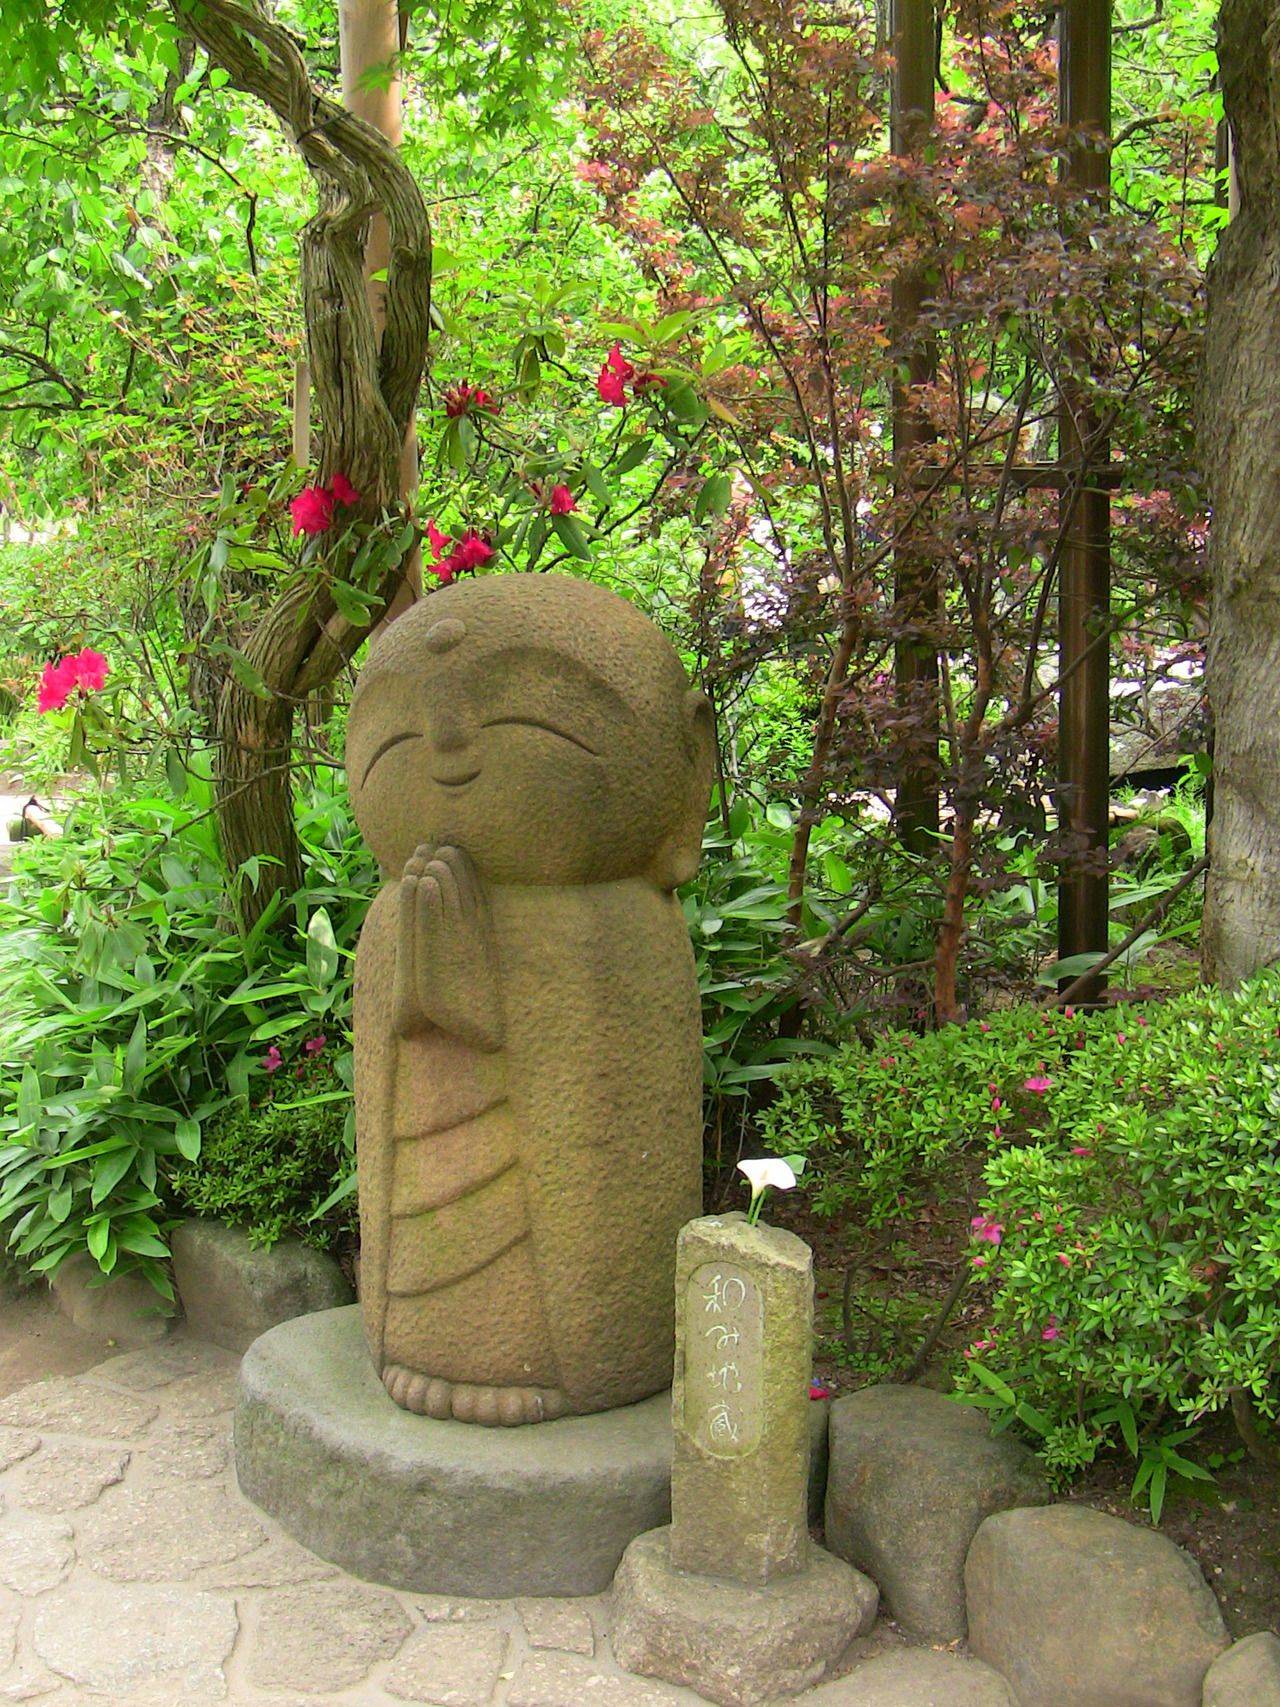 Design Toscano Easter Island Moai Monolith Garden Statue Garden